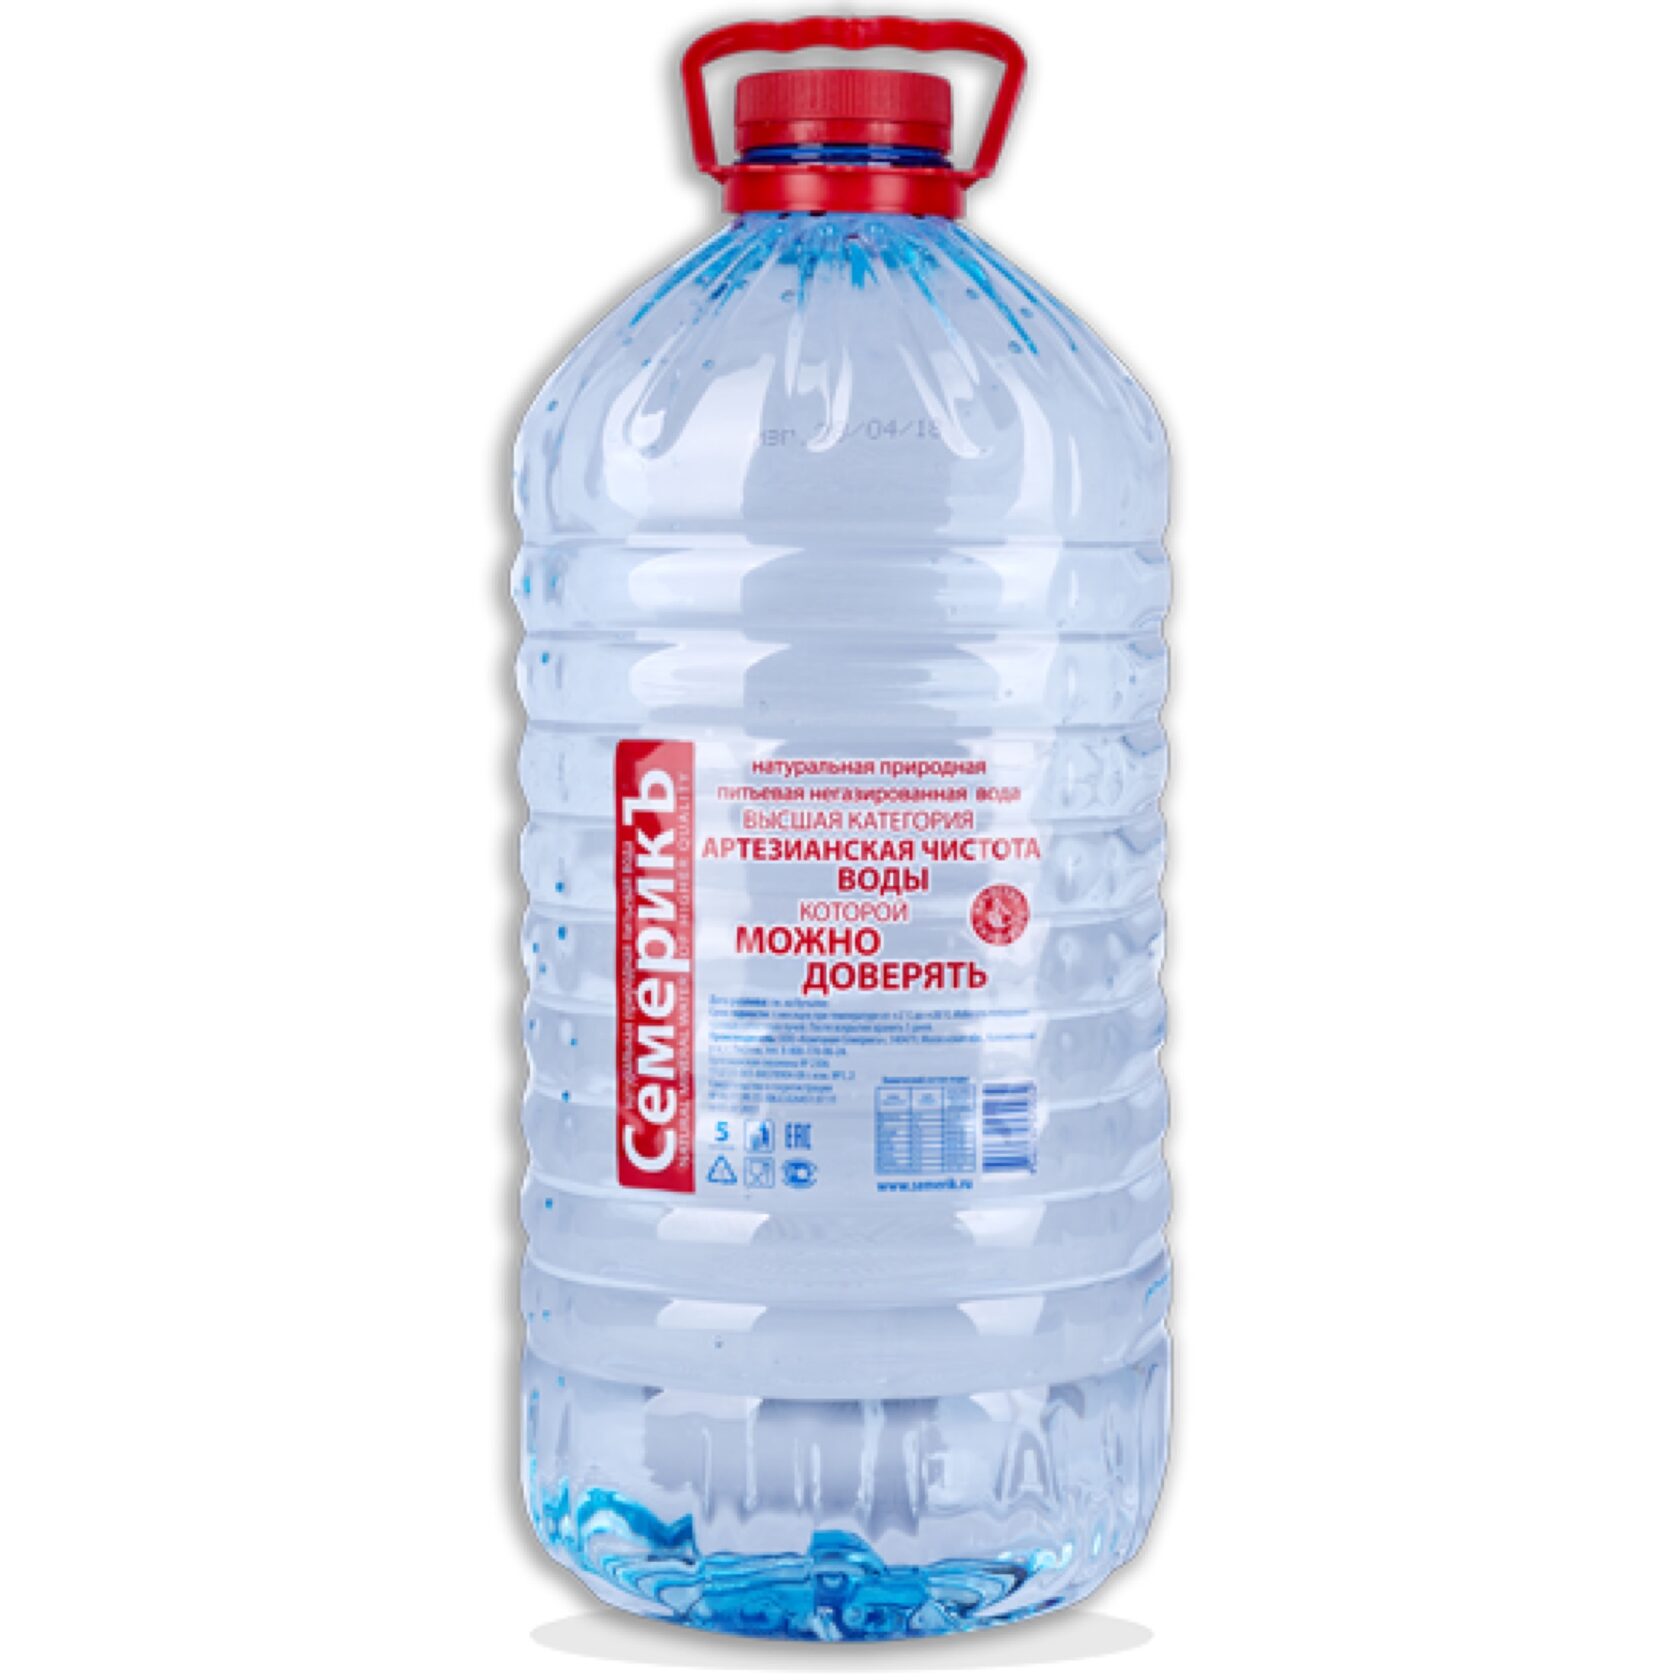 Вода 5 литров упаковка. Семерик вода питьевая 5л. Вода питьевая 5л ТМ "Аквастарт". Вода семерик 1,5. Вода питьевая негазированная 5л.